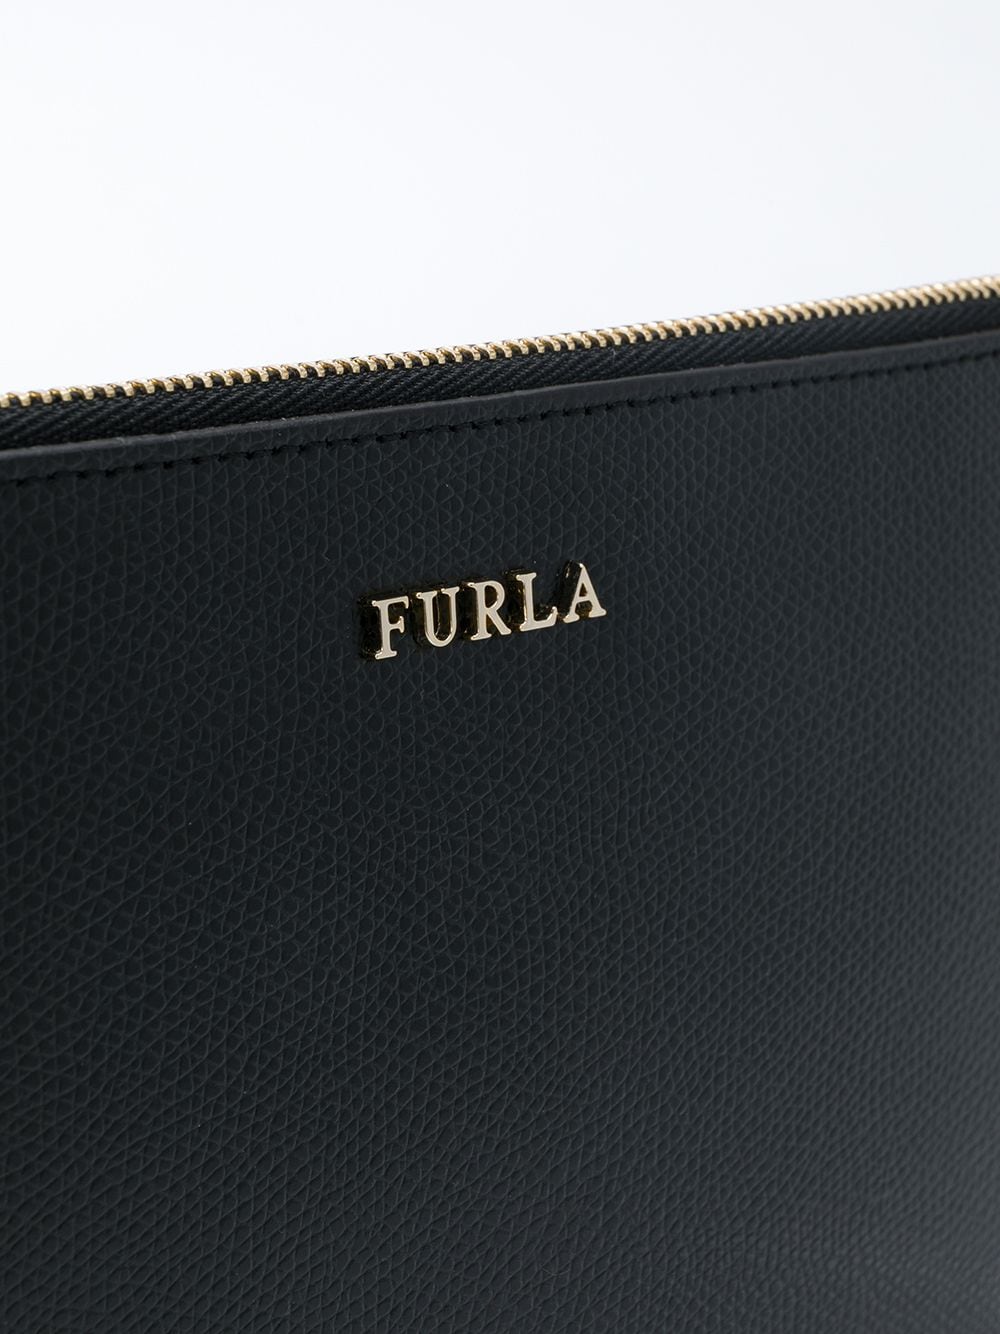 фото Furla клатч с логотипом